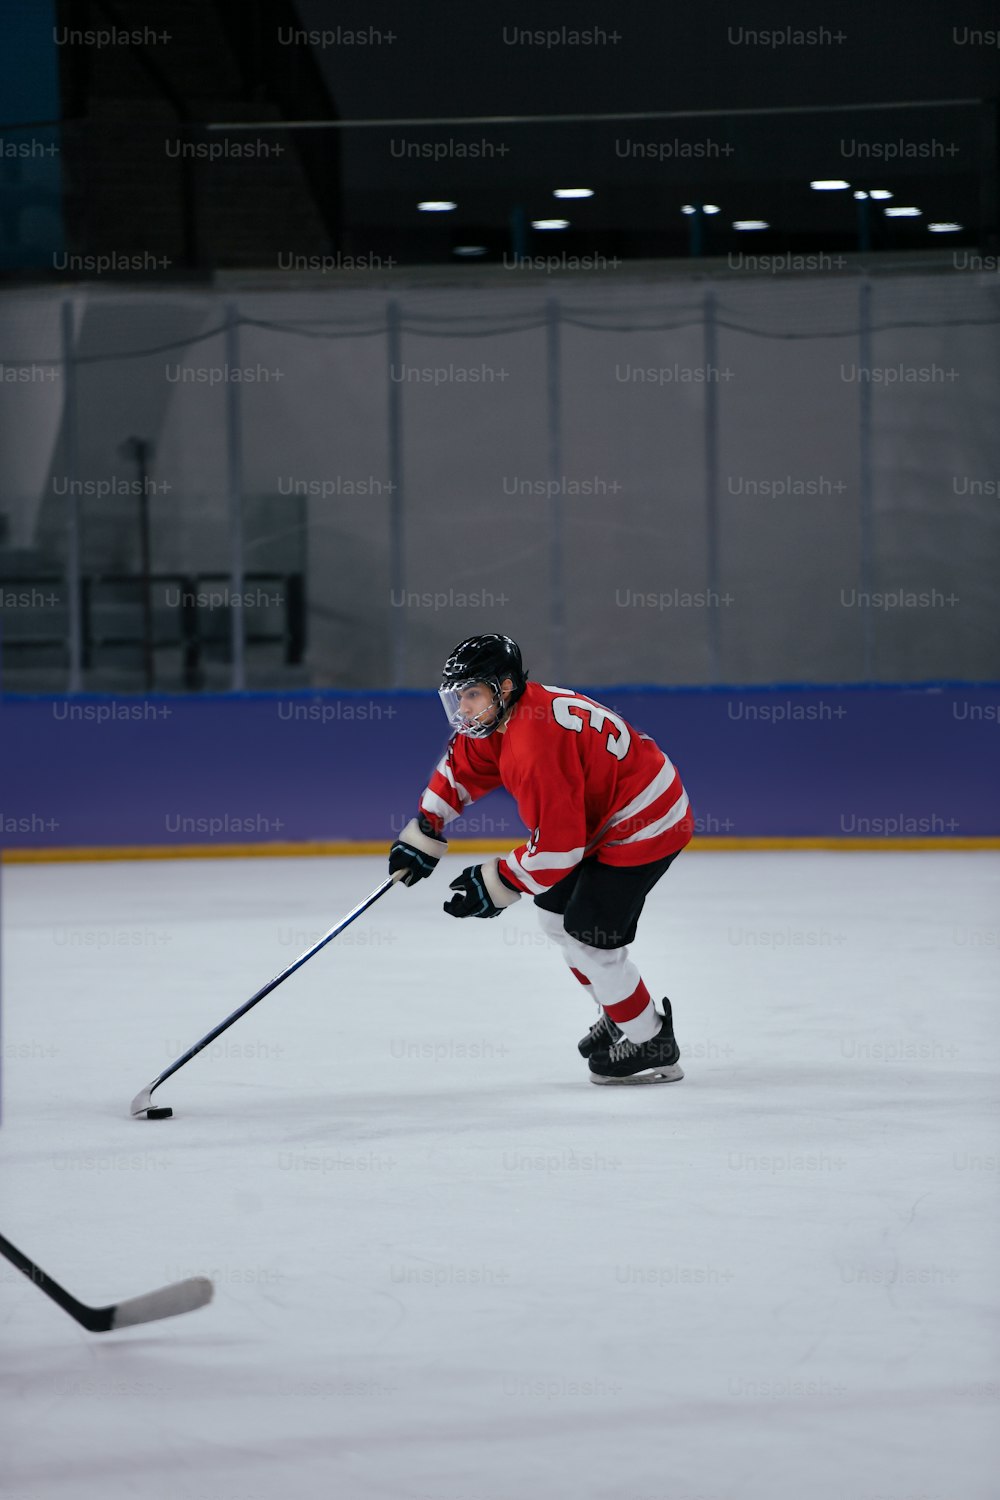 Un hombre con una camiseta roja patinando en una pista de hielo